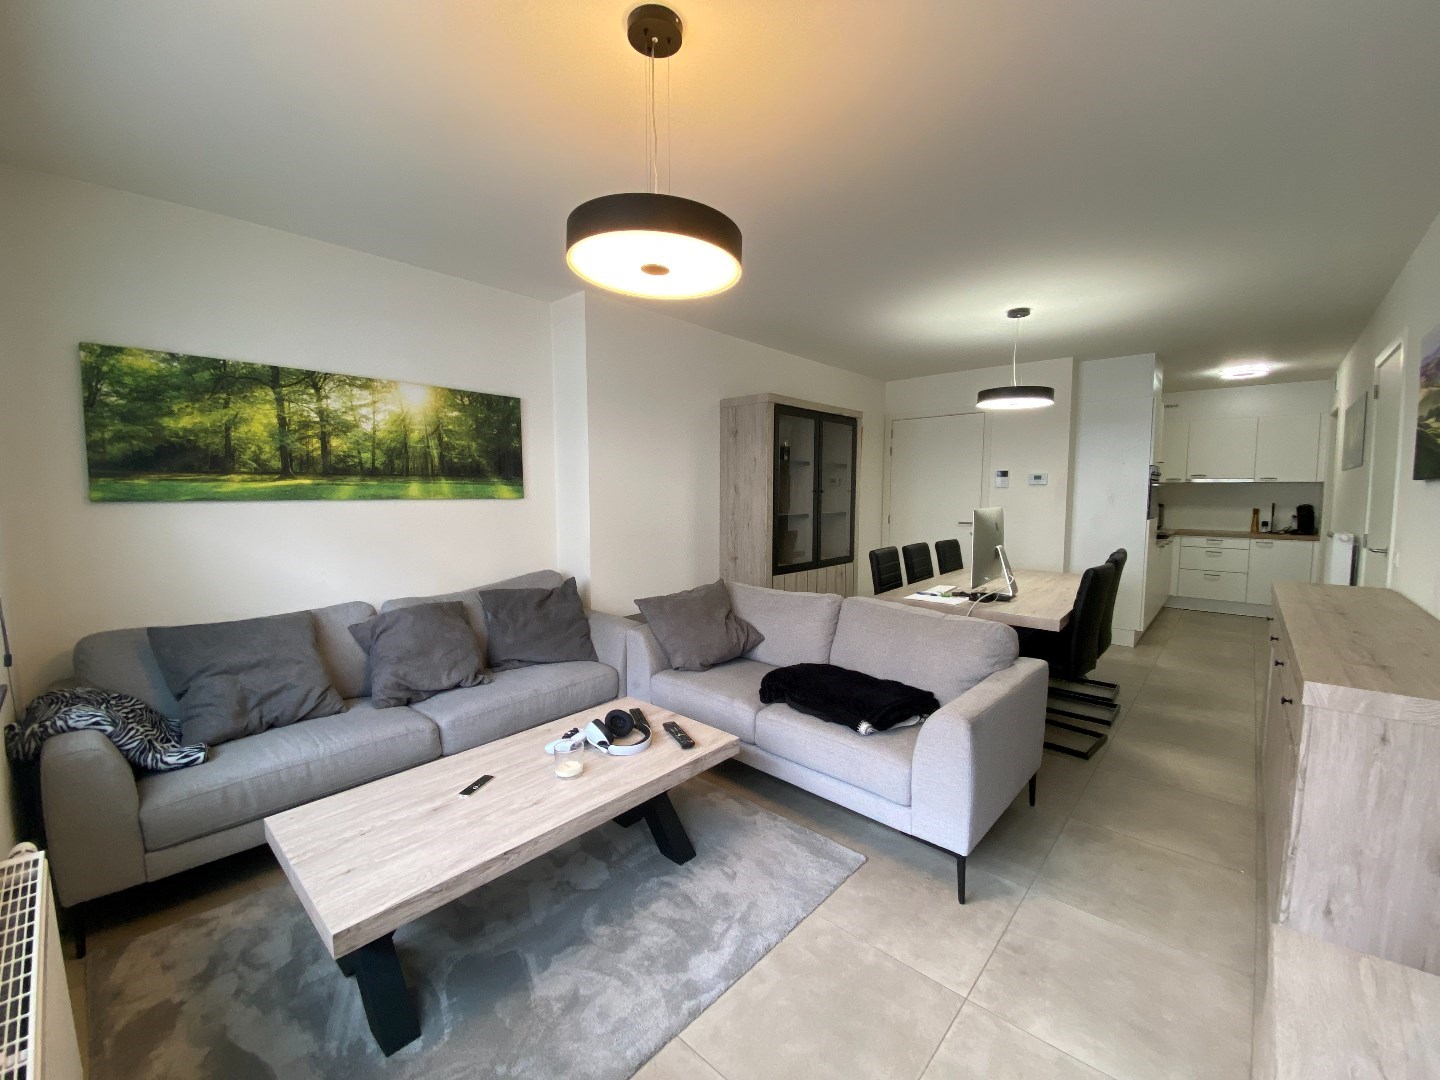 Recent gelijkvloers (verhuurd) appartement in centrum Waregem! 